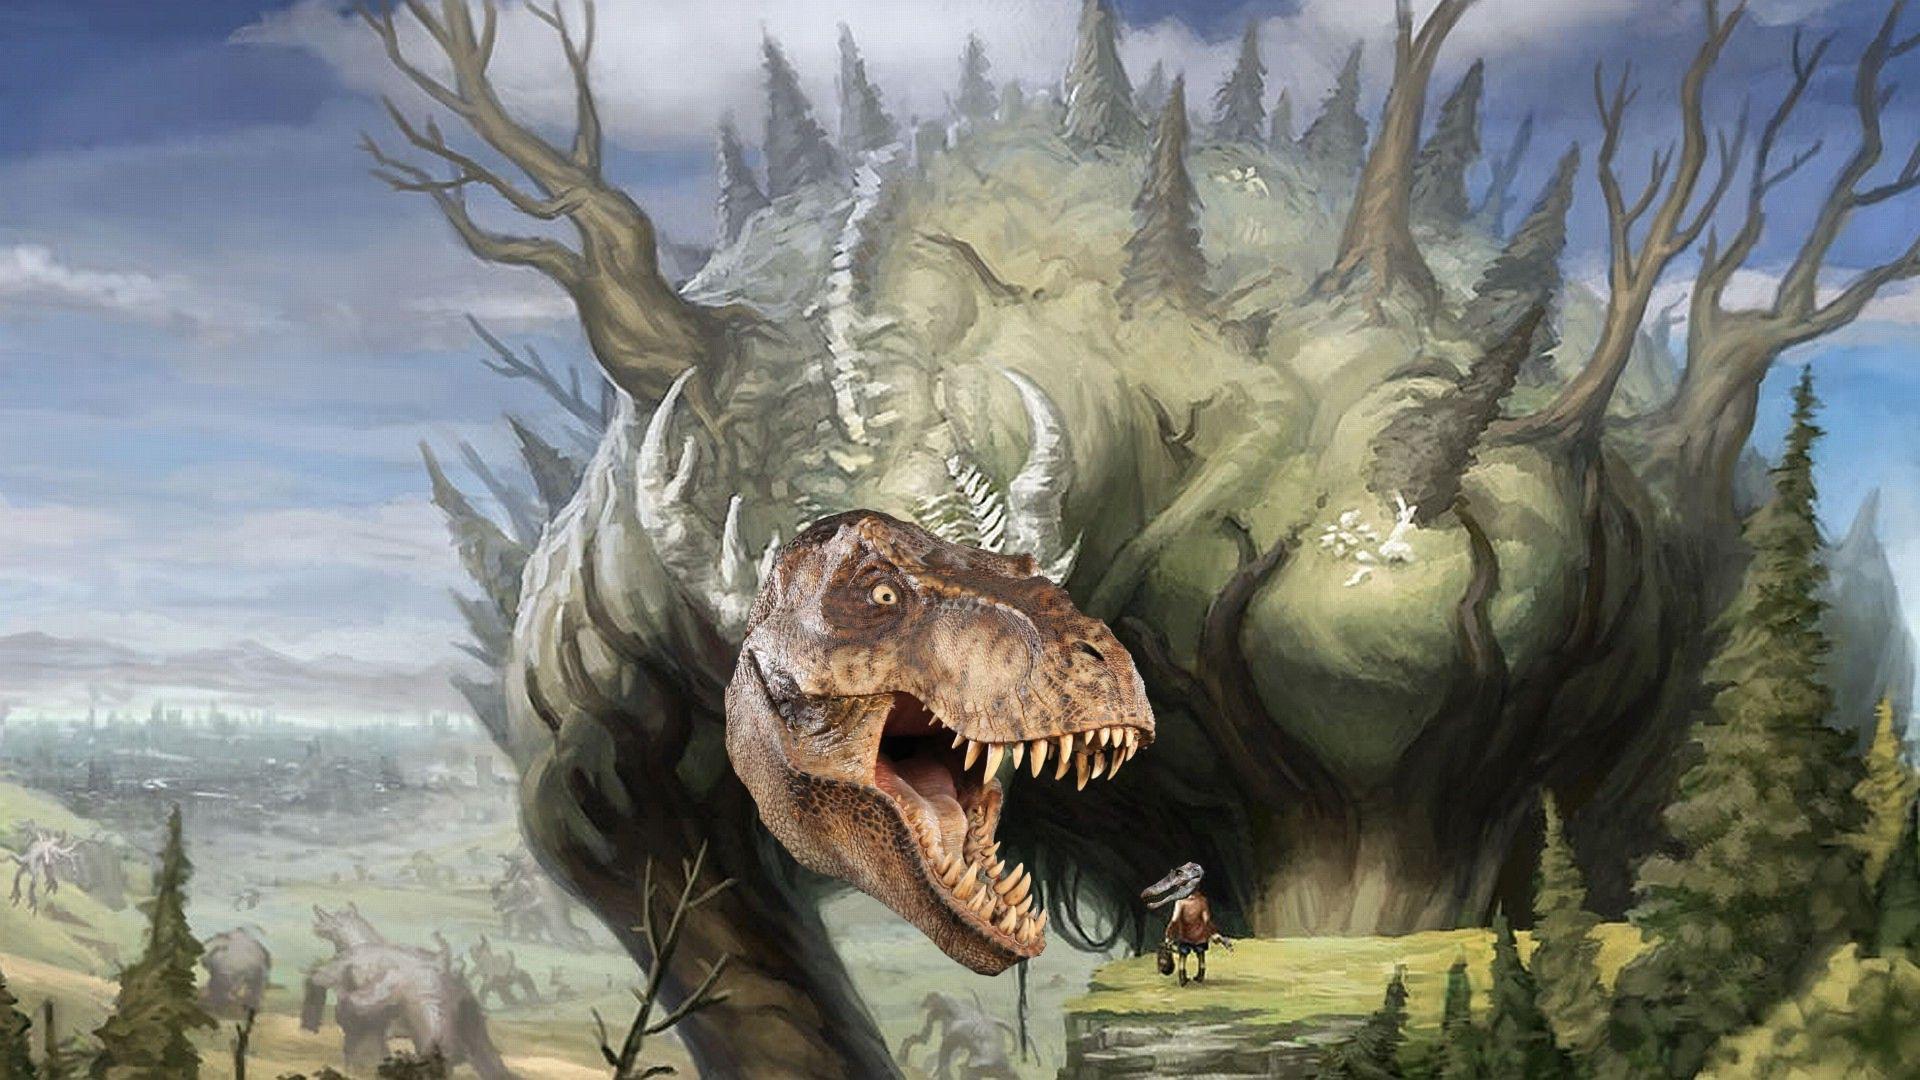 T.Rex vs Spinosaurus in a nutshell